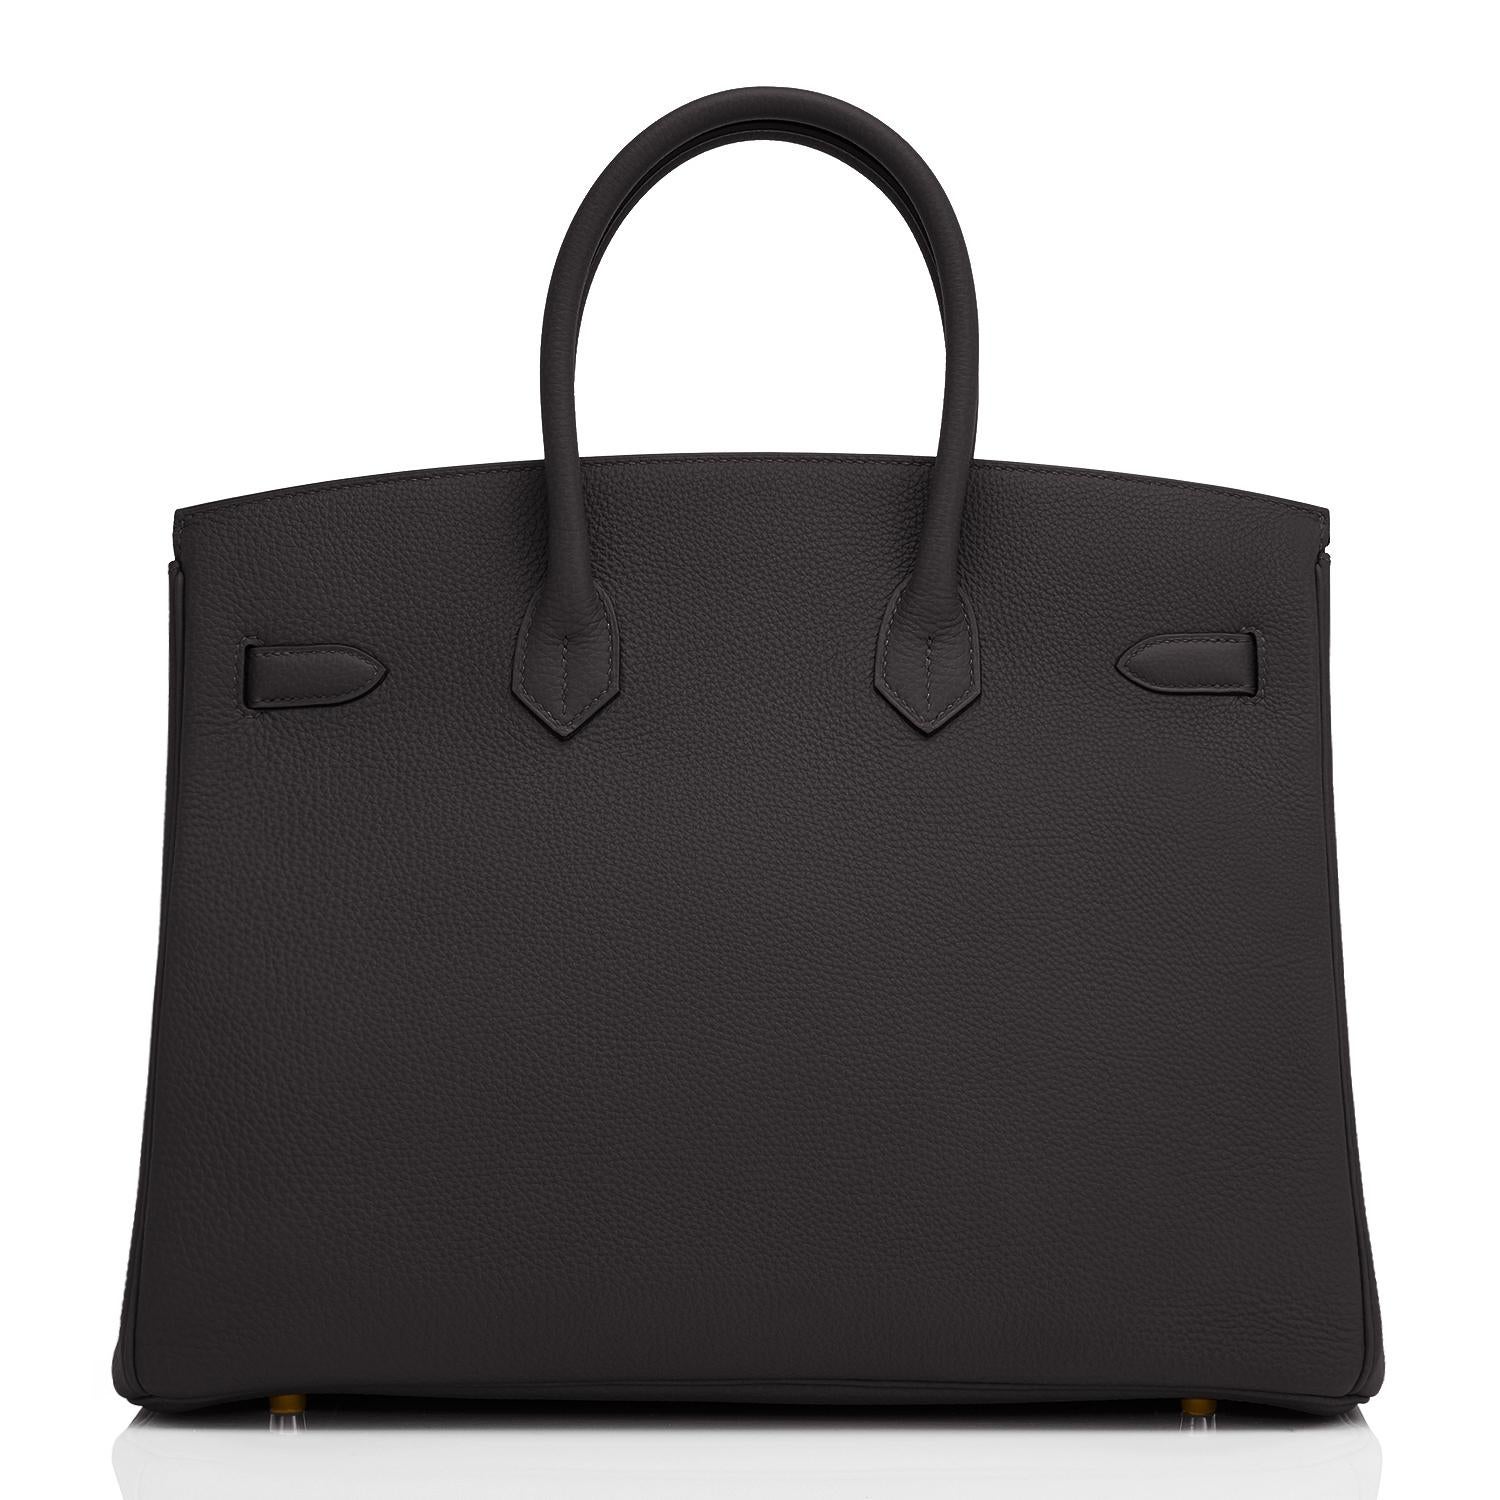 Noir Sac Hermès Birkin 35 cm en cuir Togo noir avec détails dorés et imprimé Z, 2021